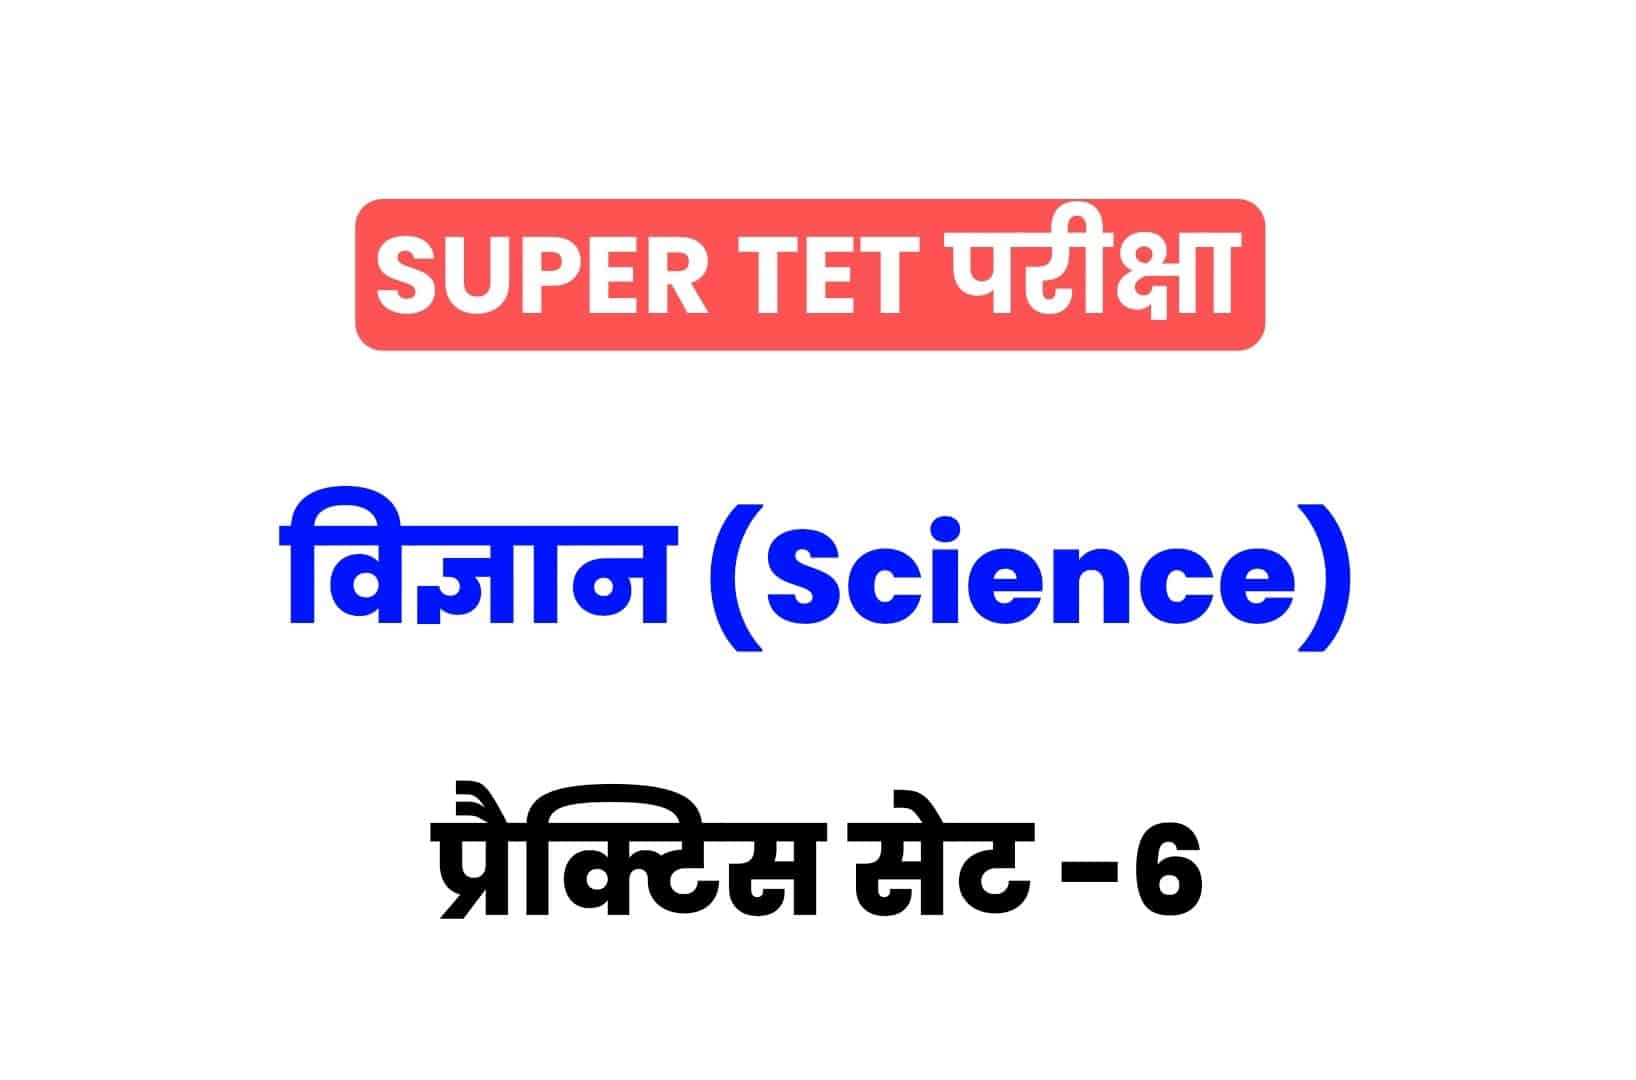 SUPER TET 2022 Science प्रैक्टिस सेट 06: विज्ञान के 15 ऐसे सवाल जो आगामी सुपर टेट परीक्षा में पूछे जा सकते हैं, जरूर देखें